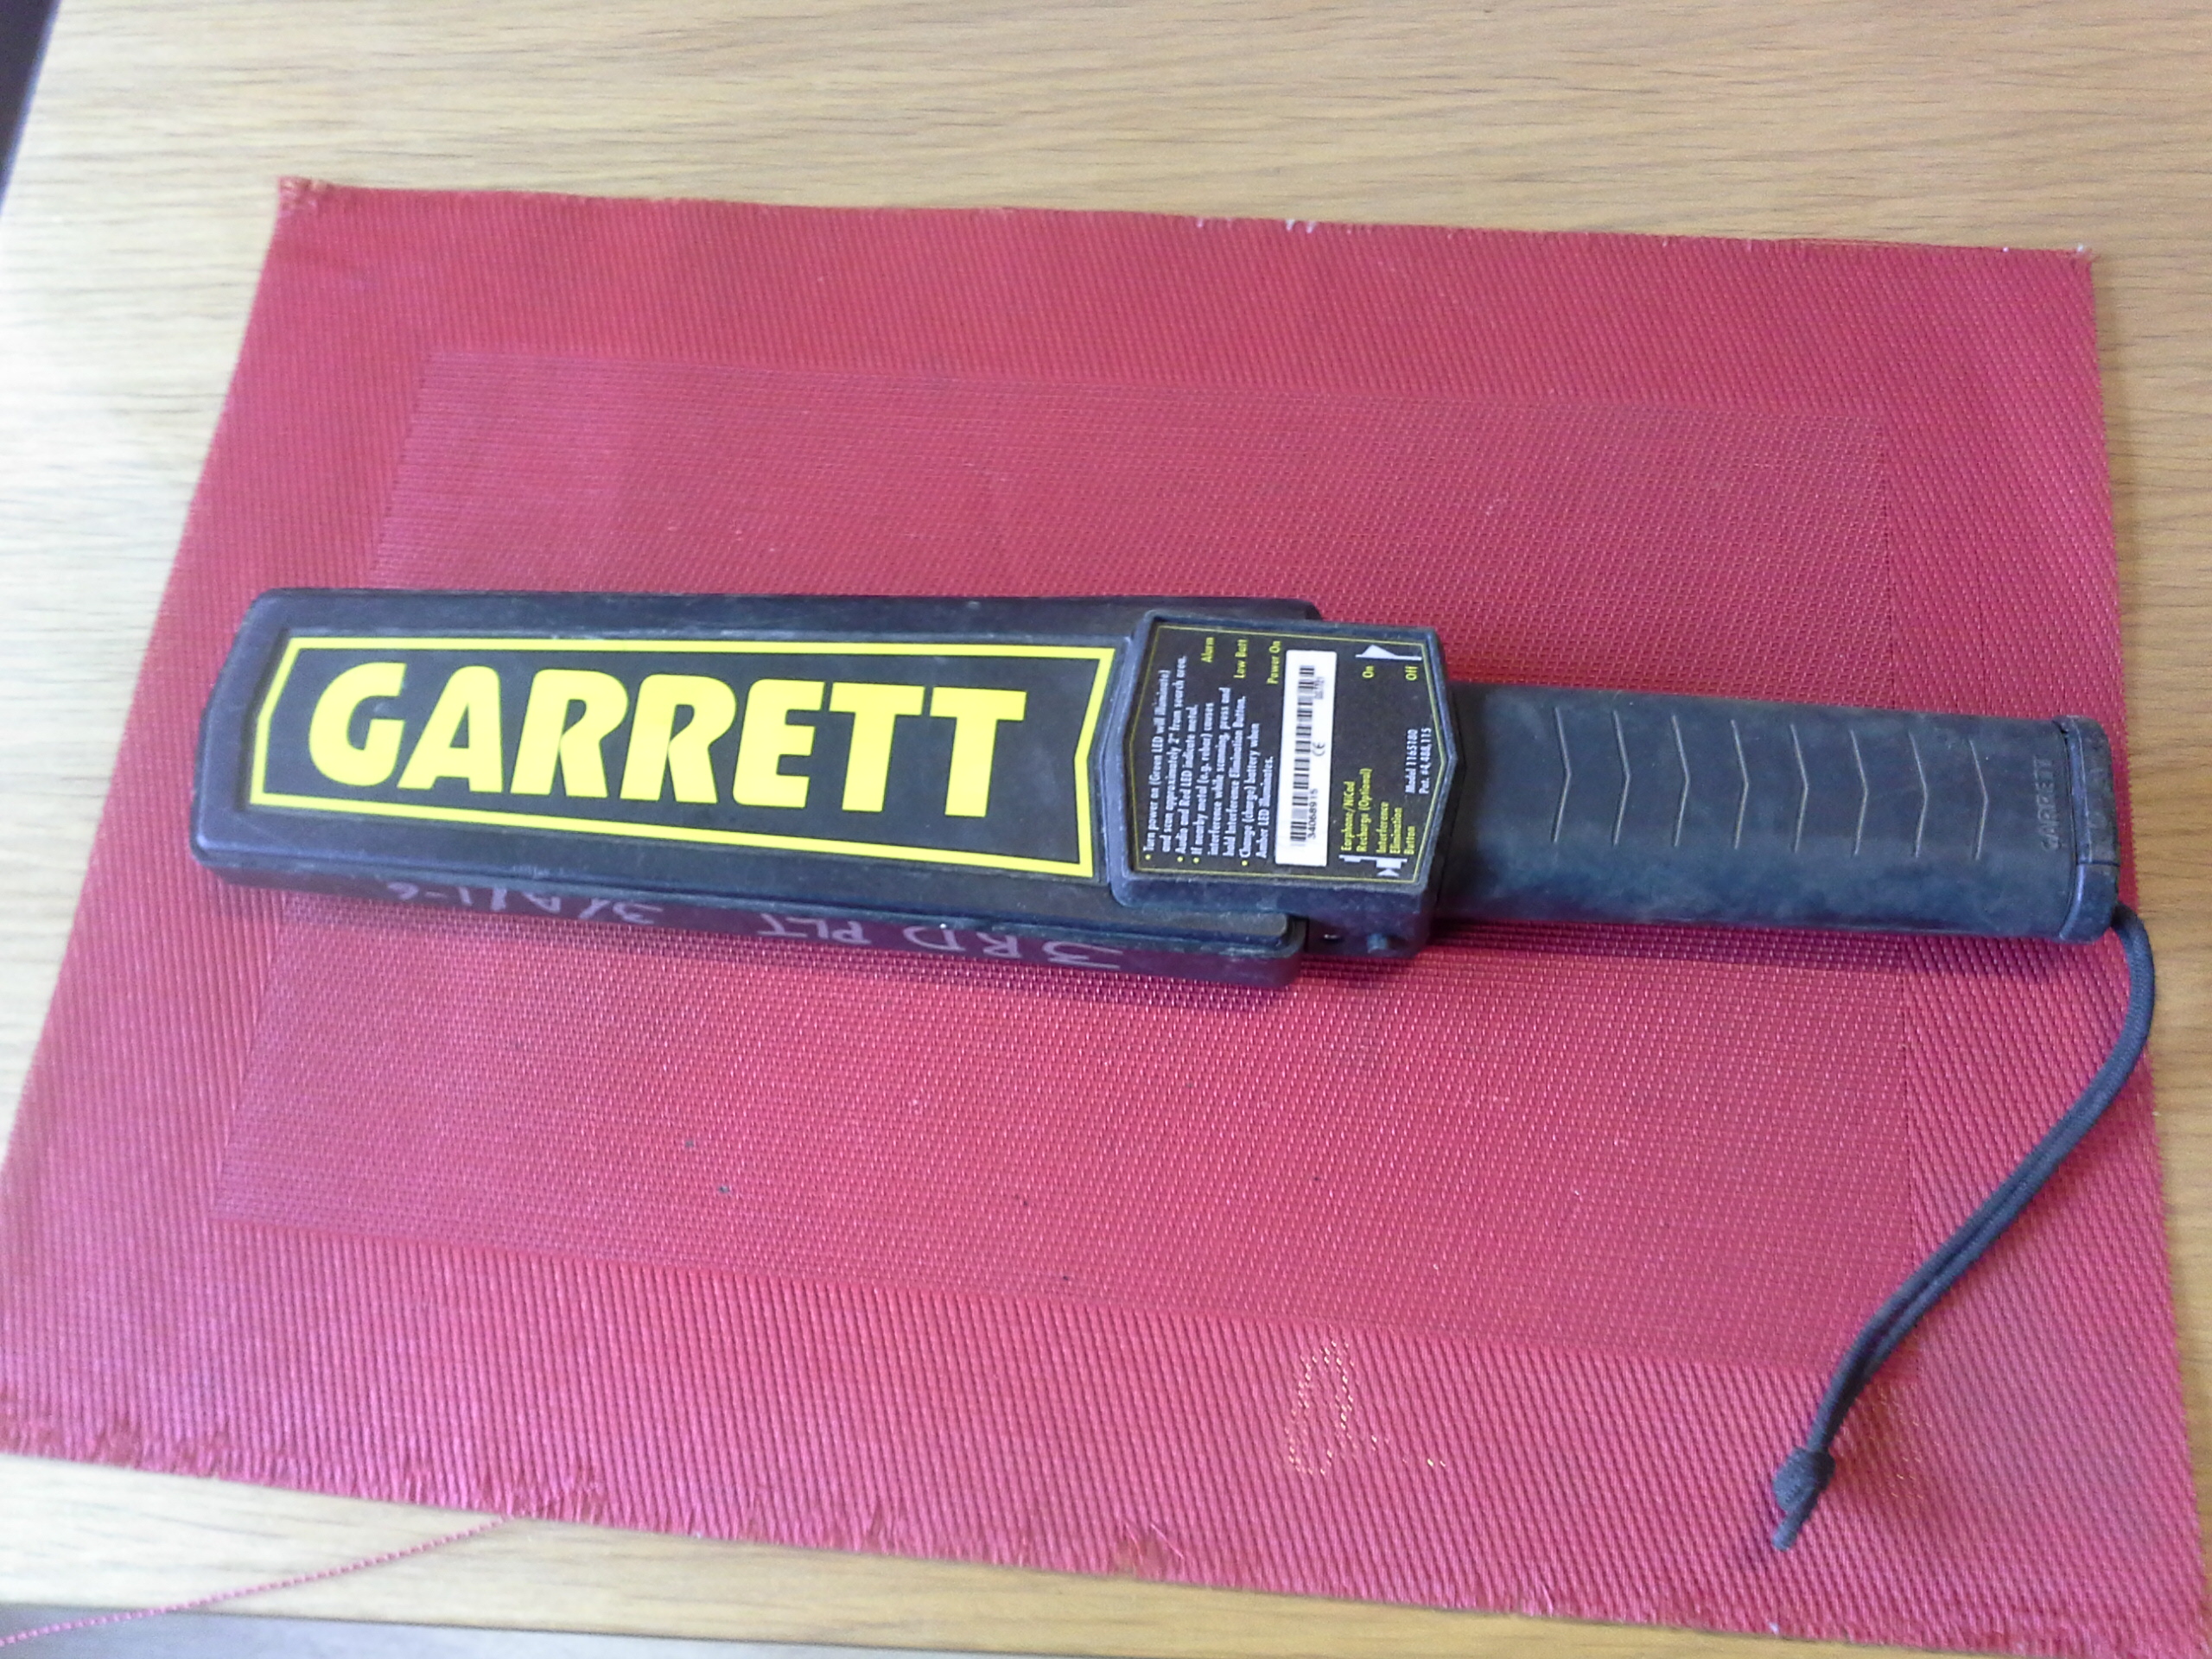 Garrett Super Scanner 1165180 Hand-Held Metal Detector